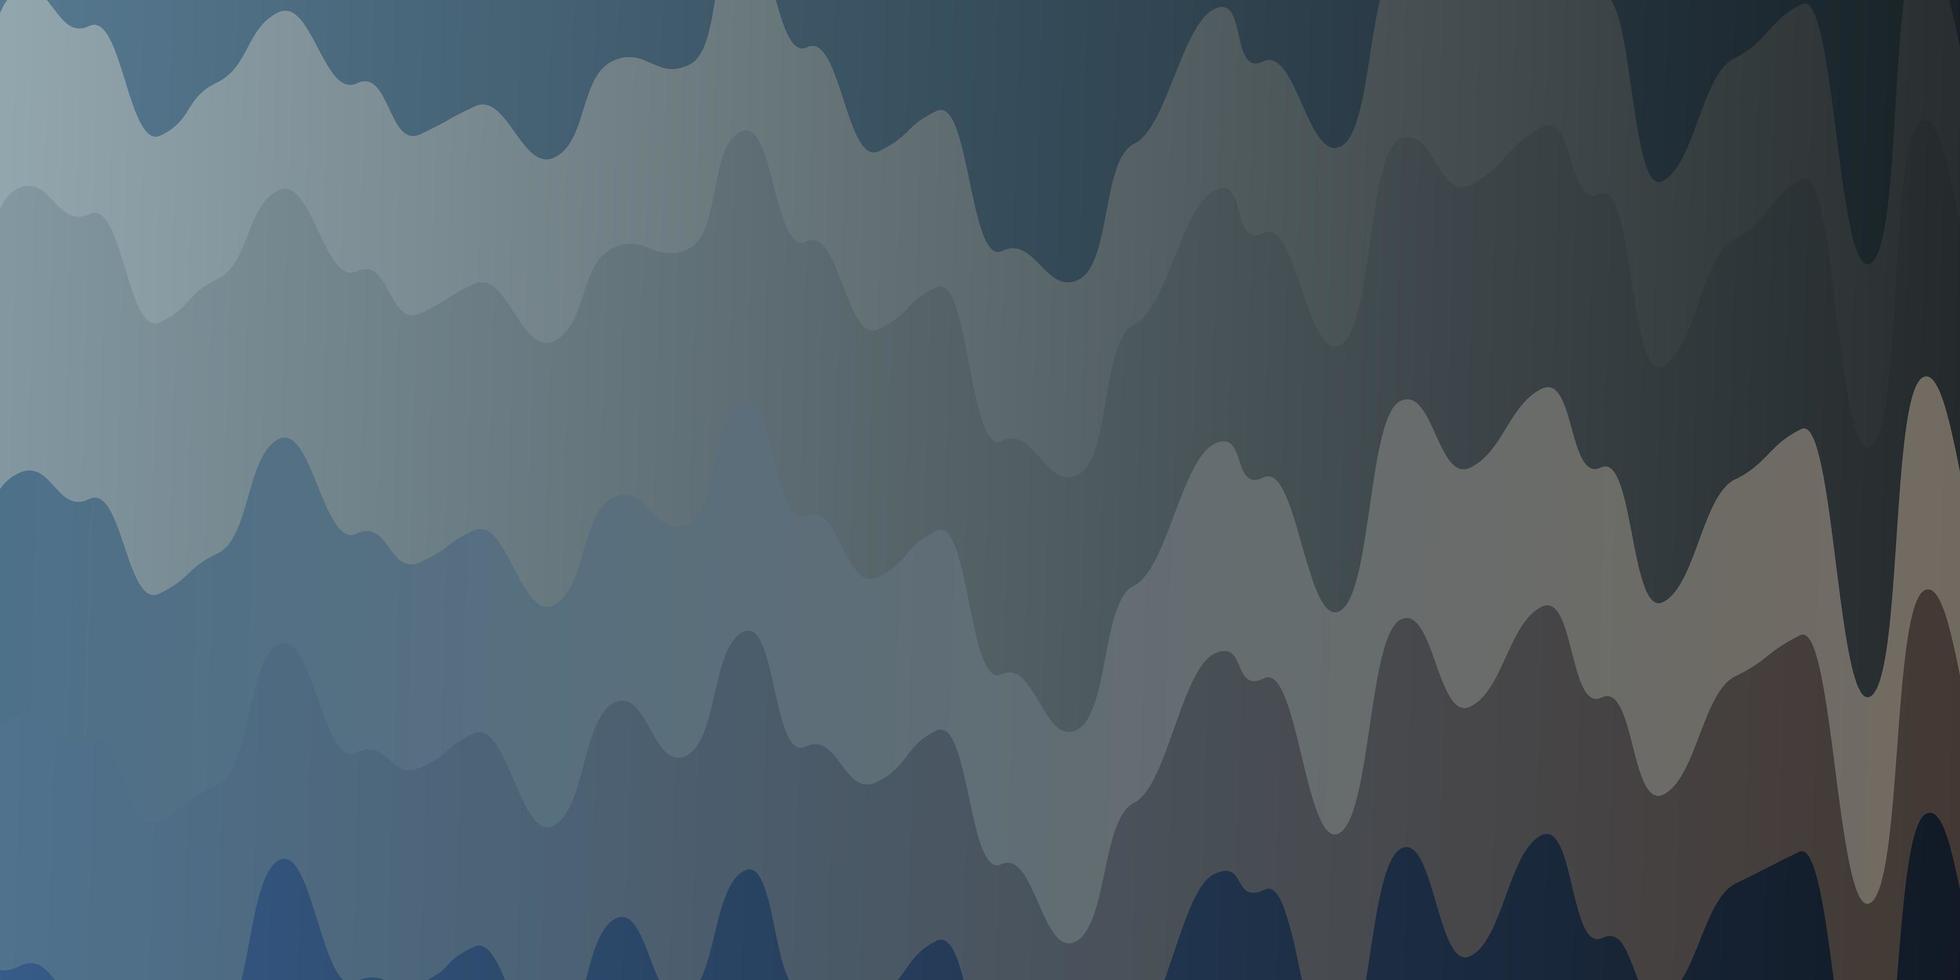 Plantilla de vector amarillo azul claro con ilustración de curvas en estilo de semitono con patrón de curvas de degradado para anuncios comerciales